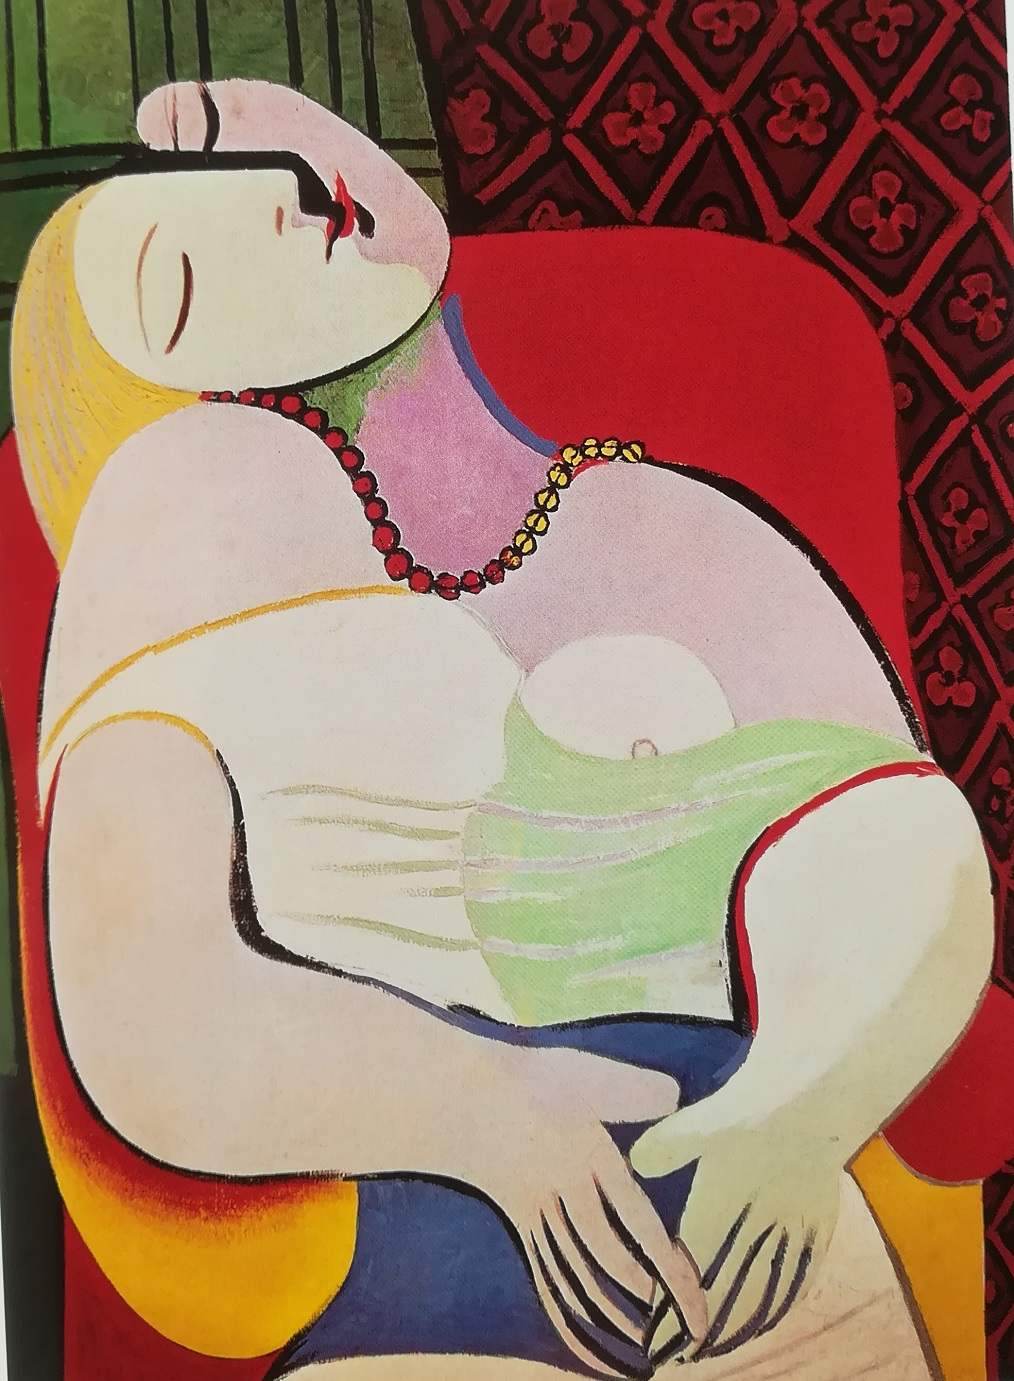 il sogno - Pablo Picasso, 1932